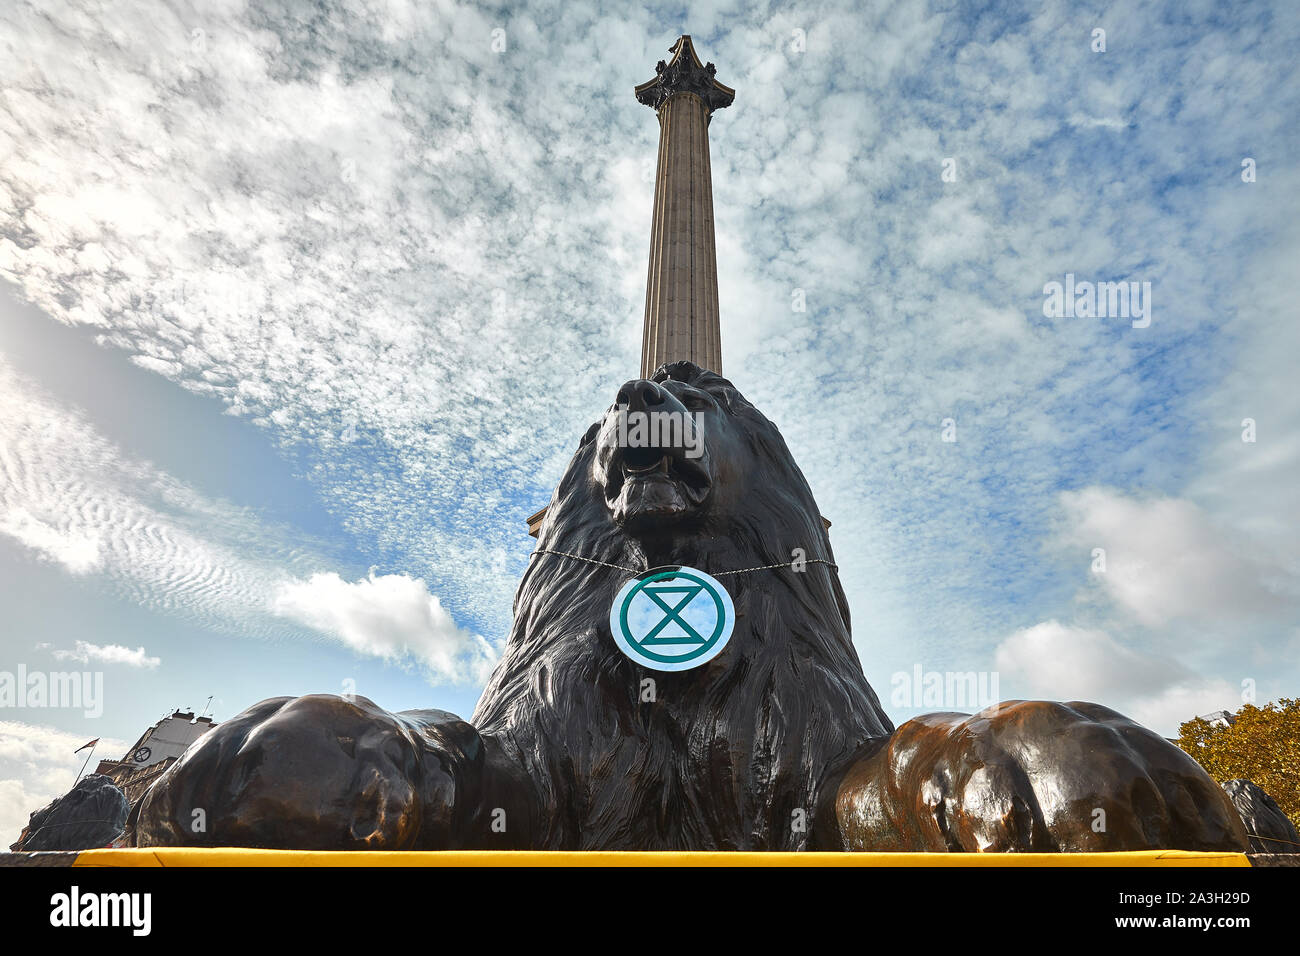 Londres, Reino Unido - Oct 8, 2019: El logotipo sandtimer colocado alrededor de un león por activistas de extinción Rebelión en el segundo día de una ocupación de Trafalgar Square. Foto de stock